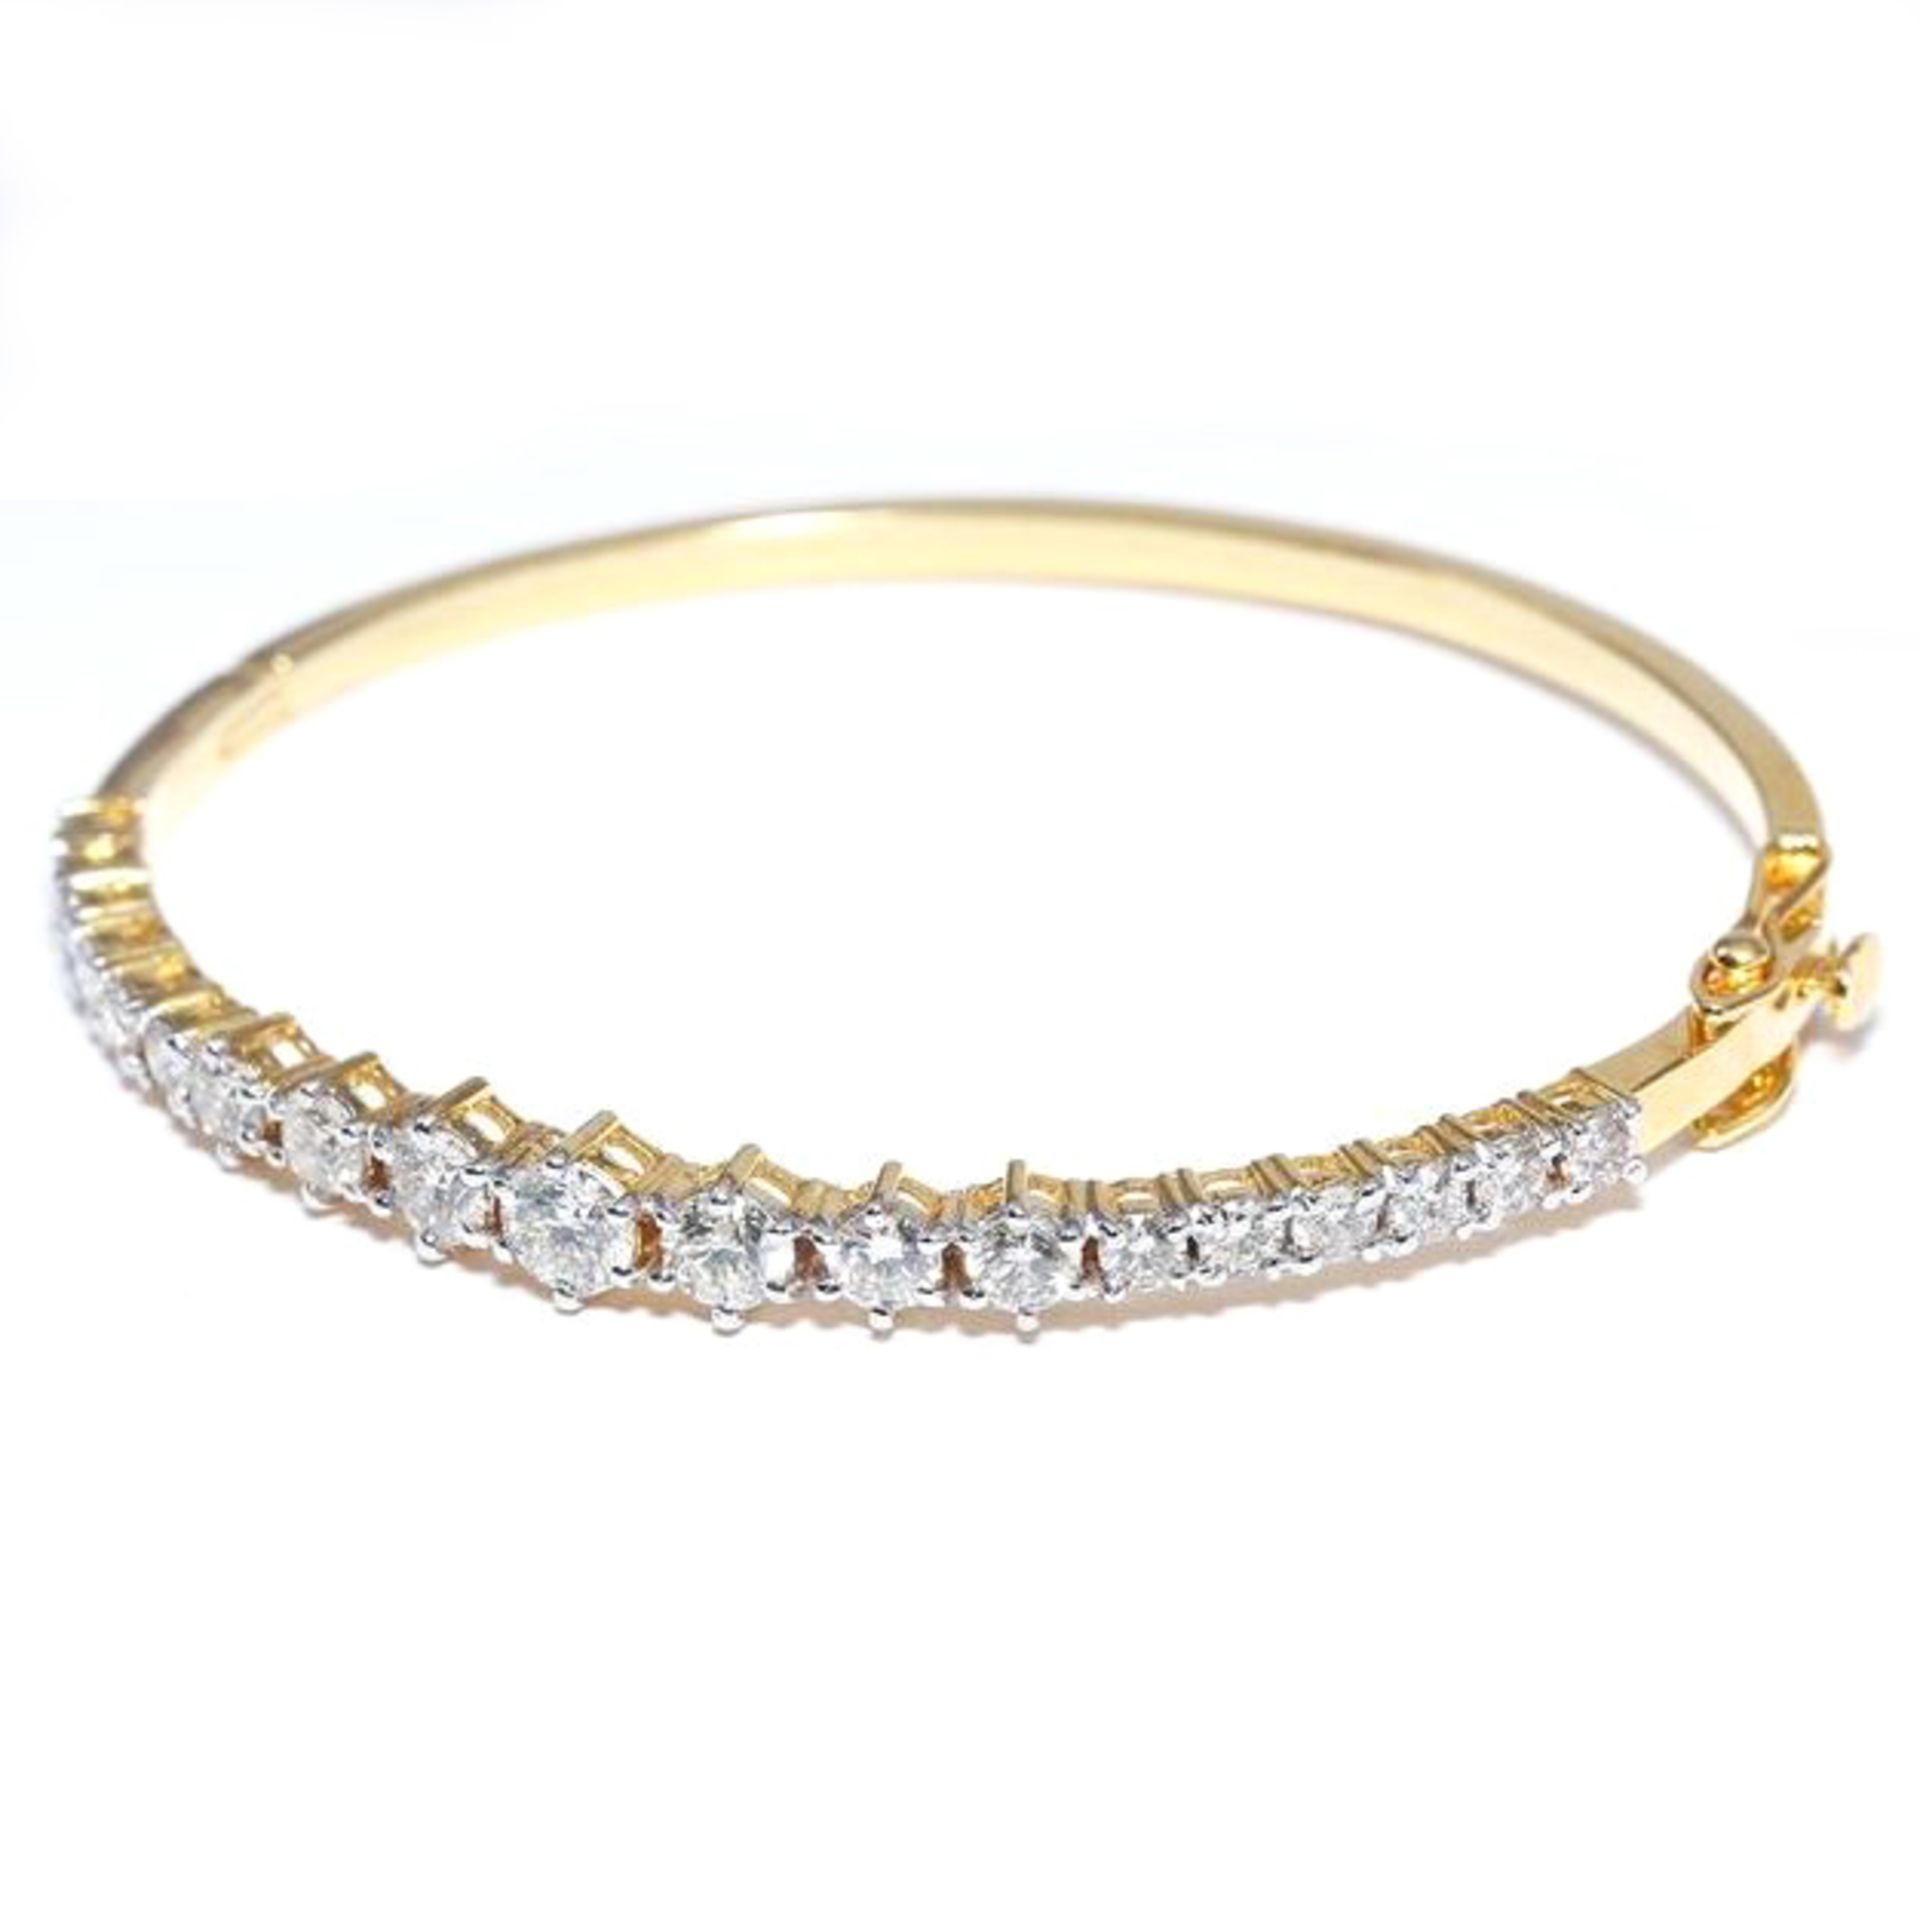 IGI Certified 14 K / 585 Yellow Gold Diamond Bracelet